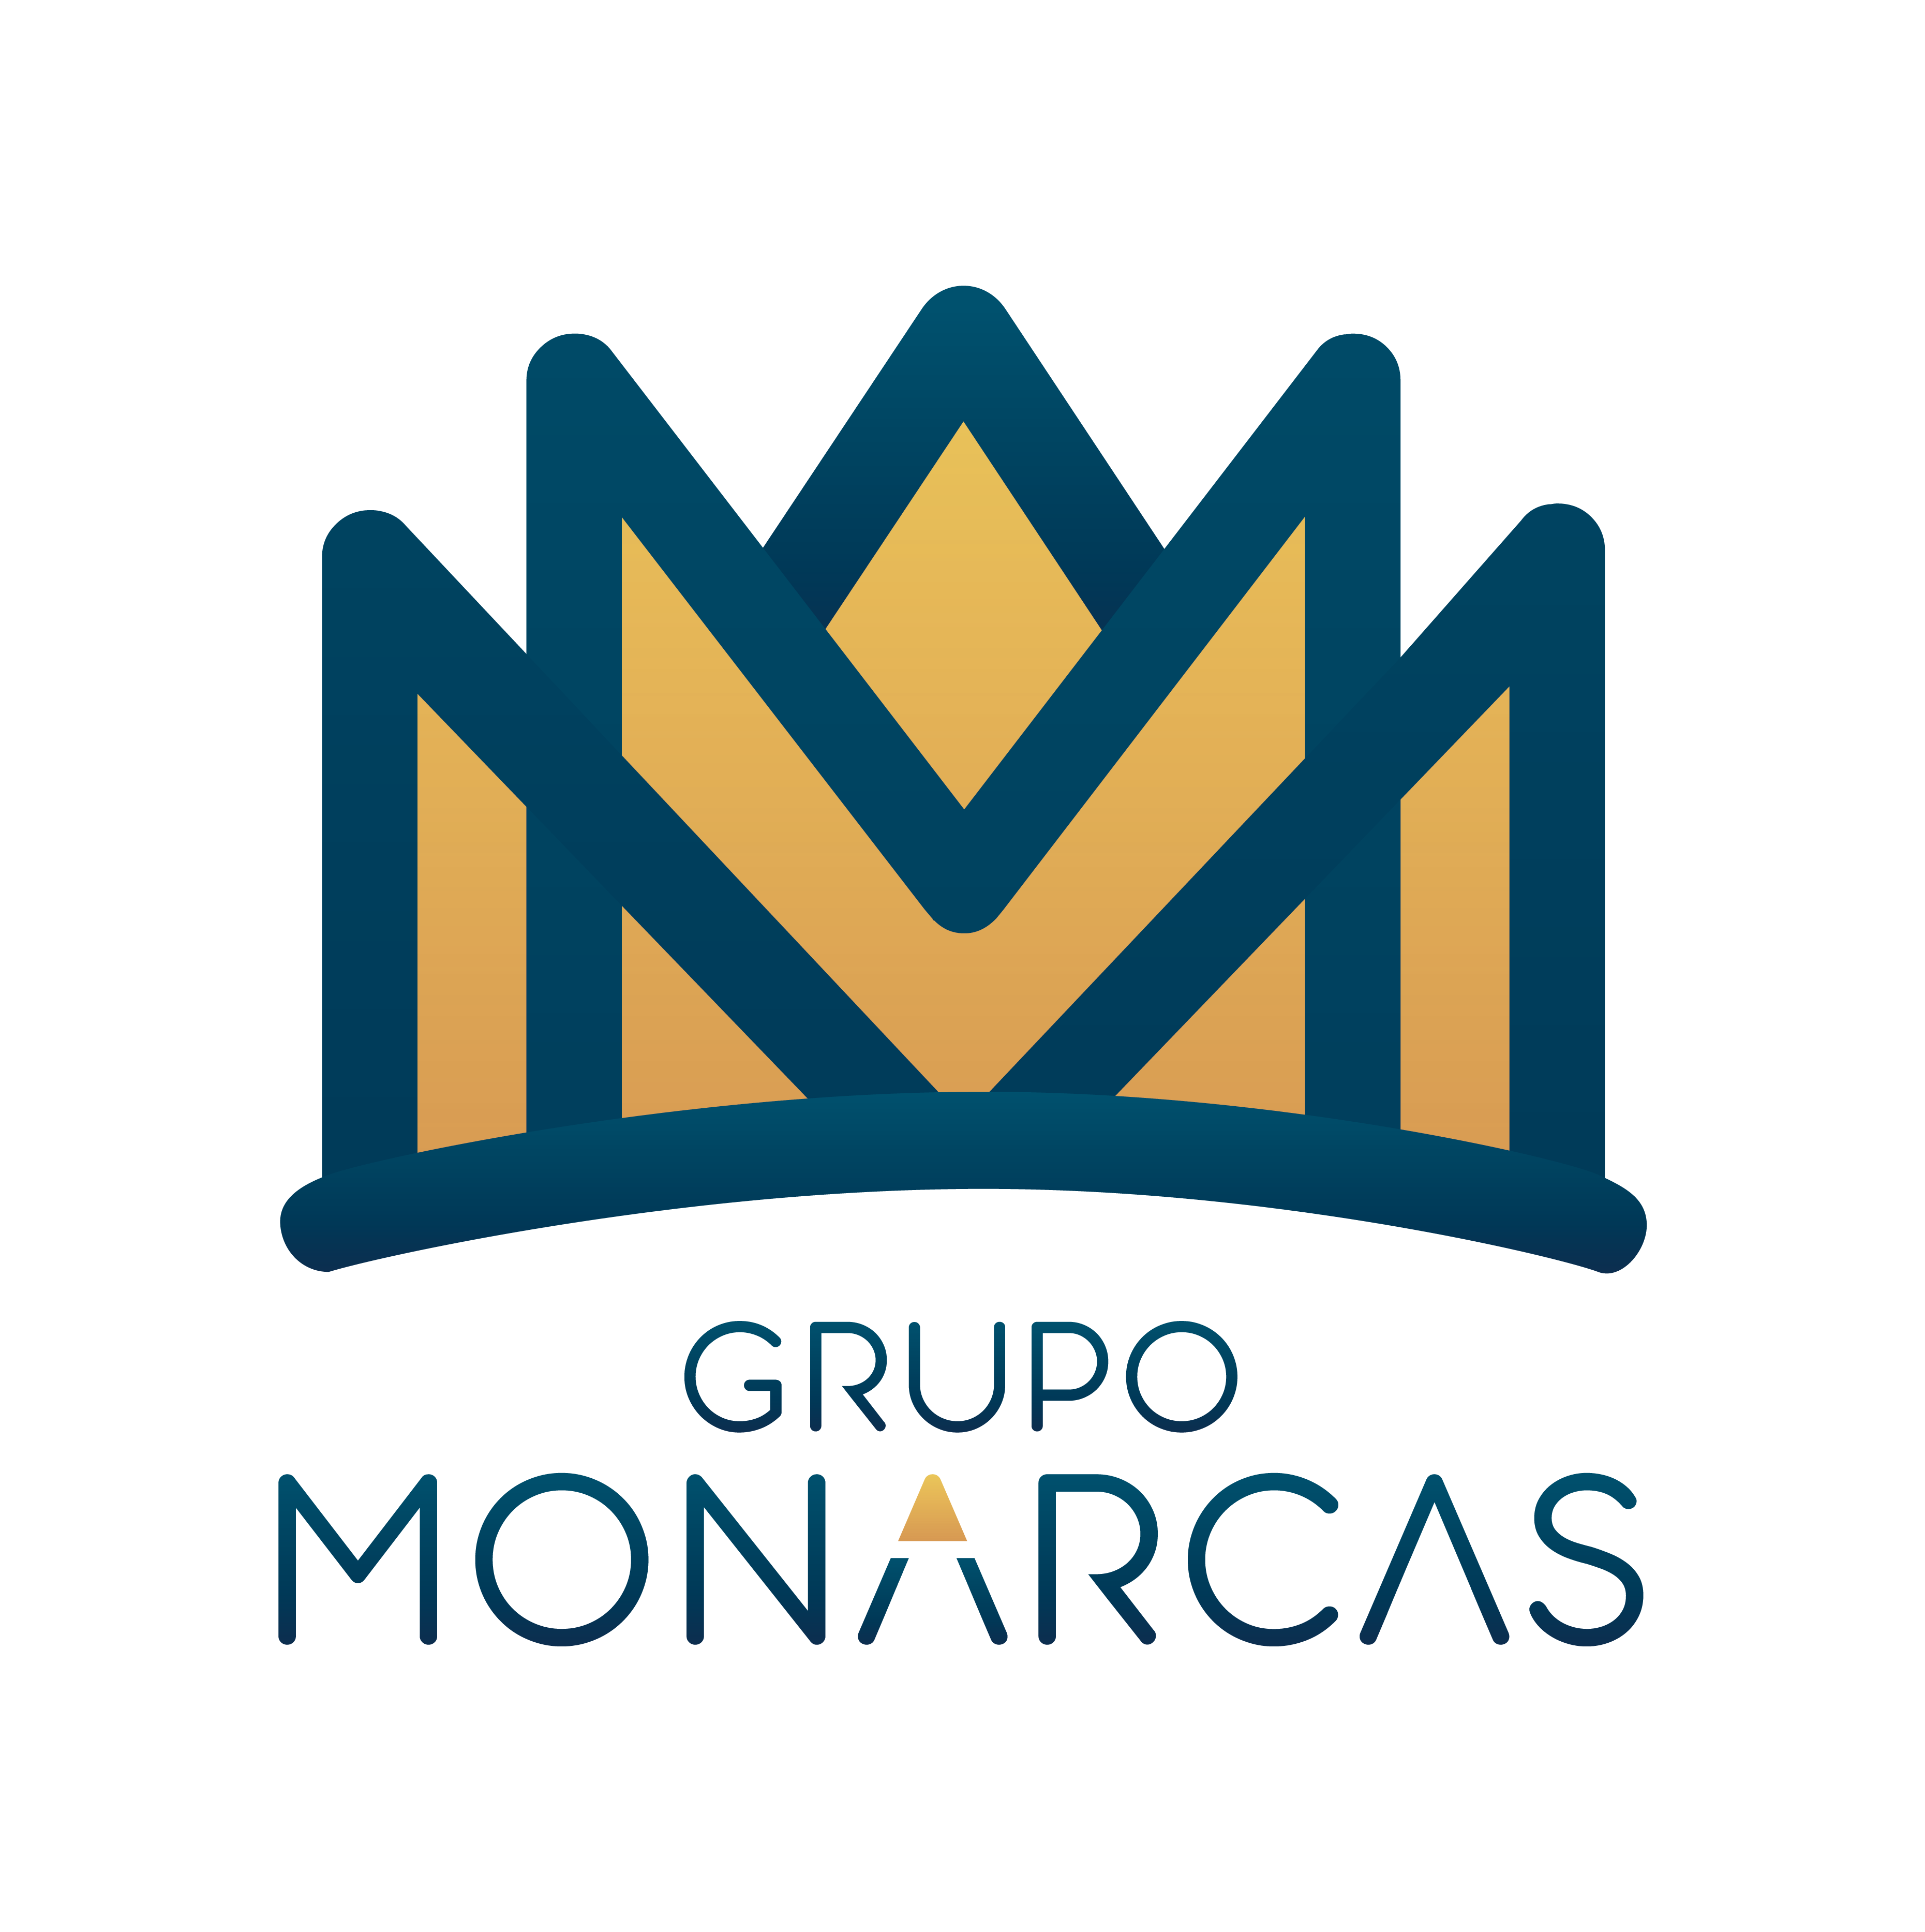 Grupo Monarcas